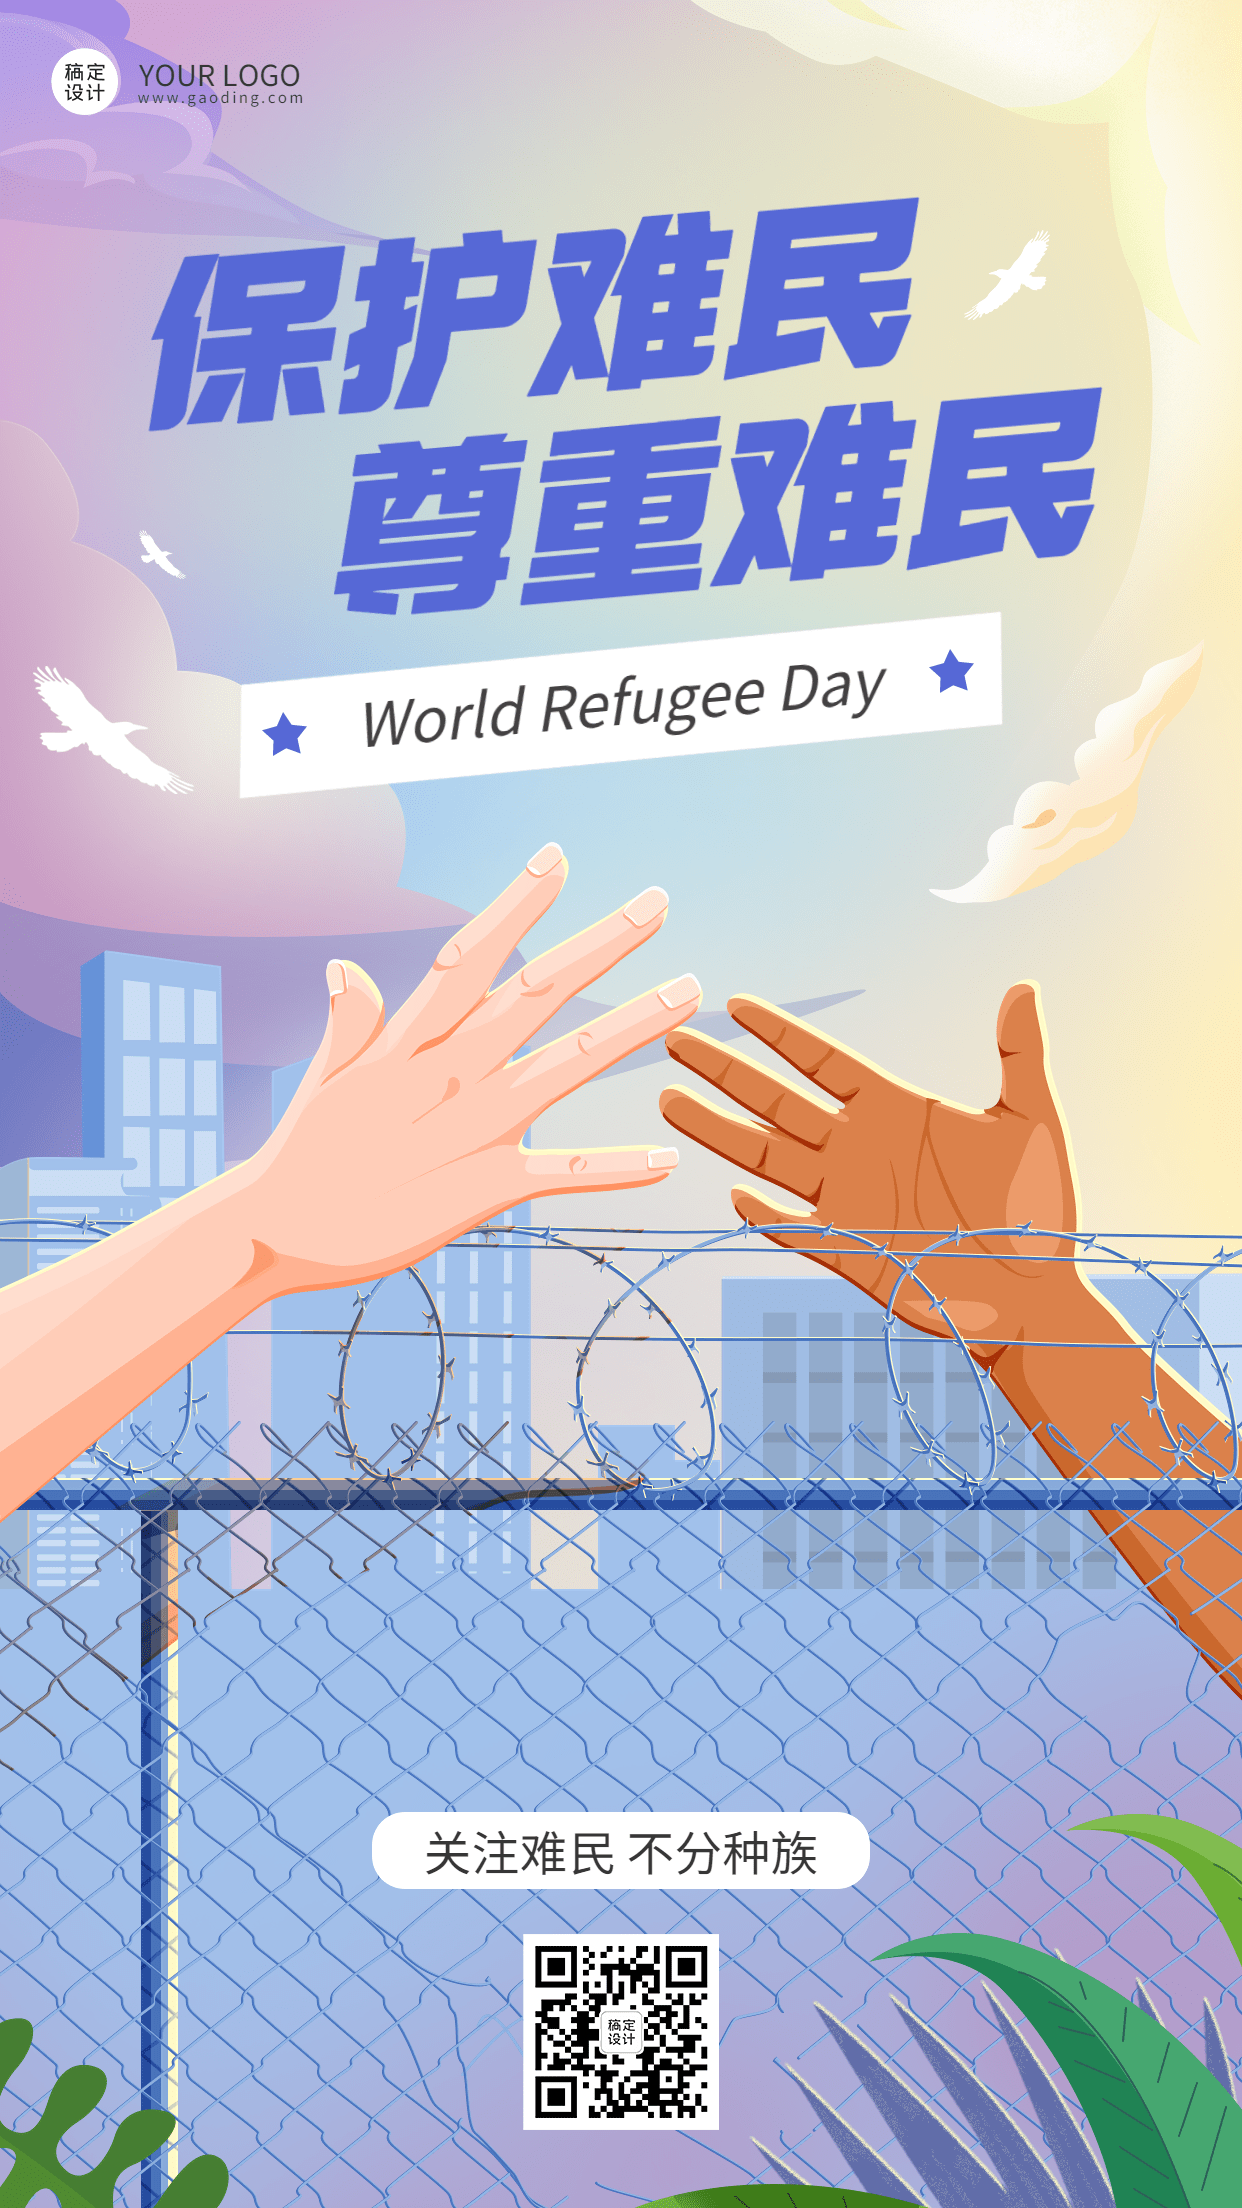 世界难民日节日宣传手绘插画手机海报